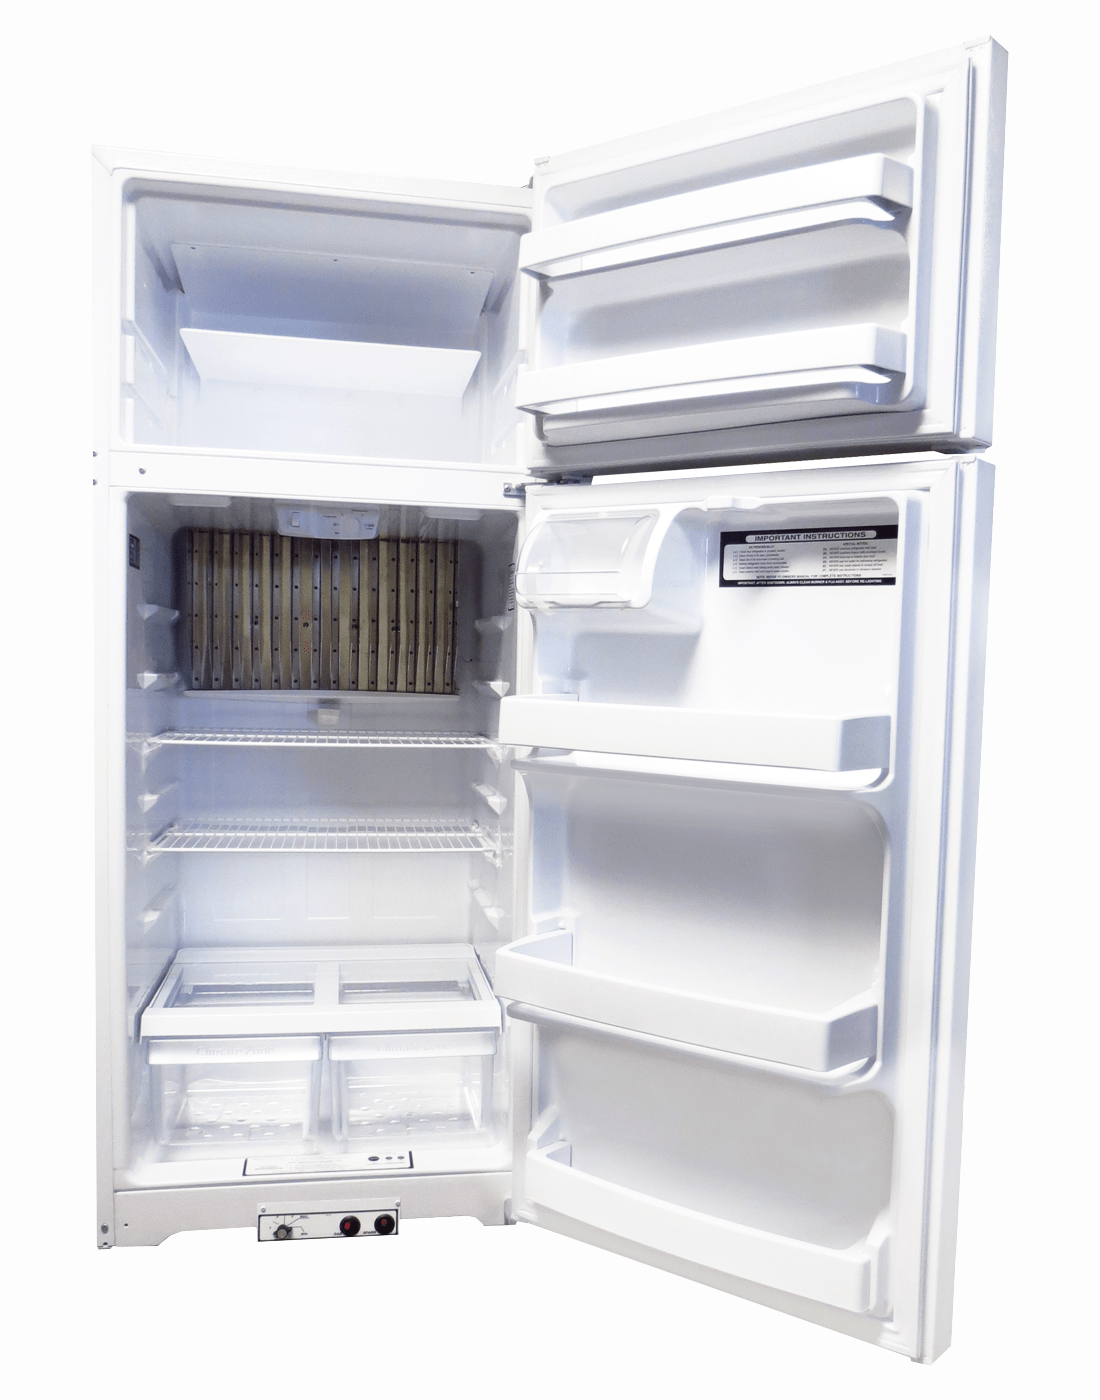 EZ Freeze Propane Refrigerator EZ Freeze EZ-19W 19 cu. ft. Propane Refrigerator-Freezer in White